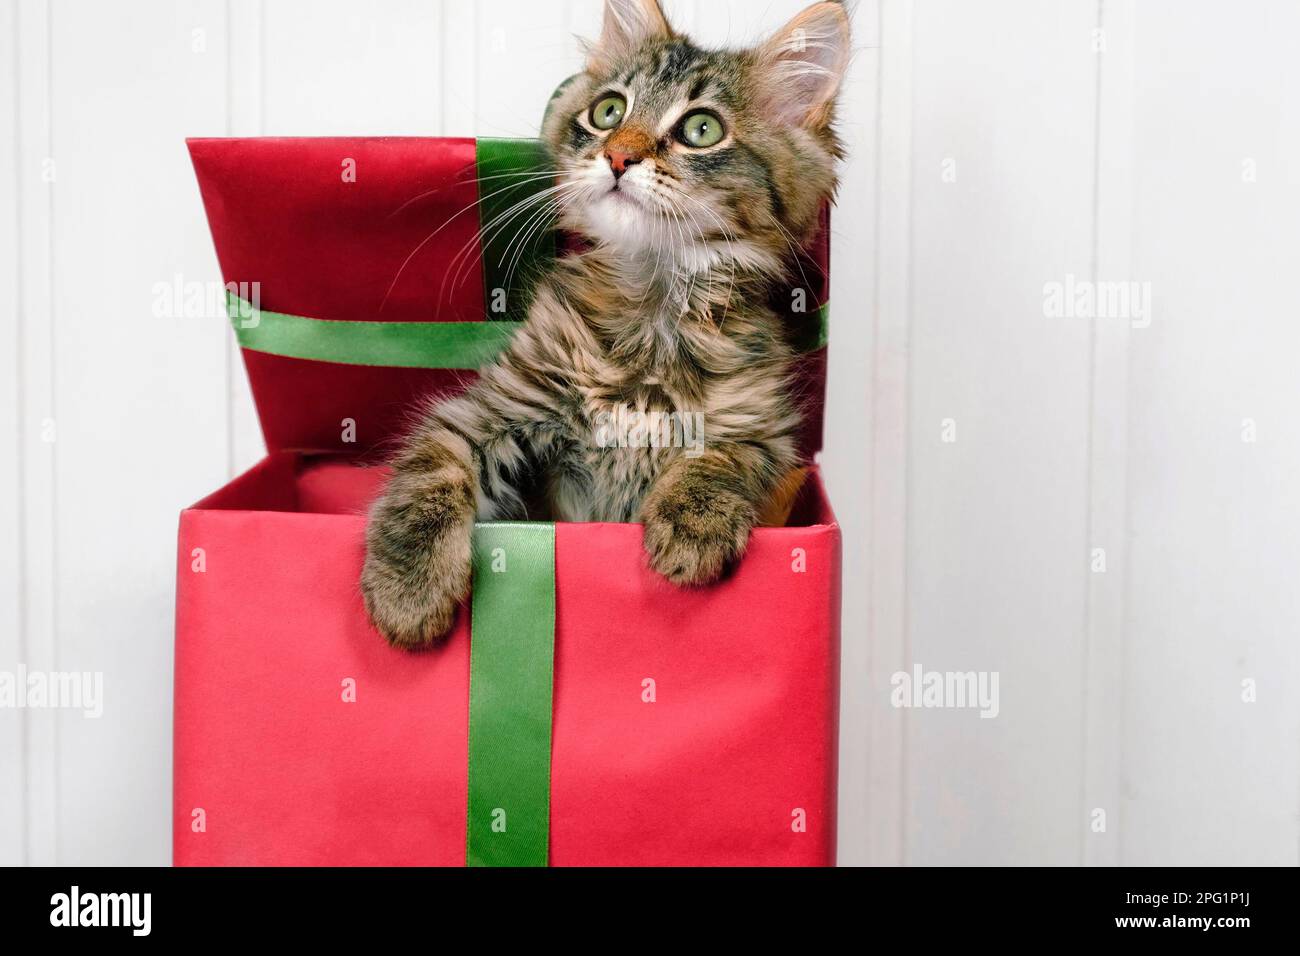 Little Cat est dans une boîte cadeau rouge. Chaton pour présent. Noël Kitty.  Concept festif. Arrière-plan en bois blanc, espace de copie pour le texte.  Cadeaux de Noël pour animaux de compagnie